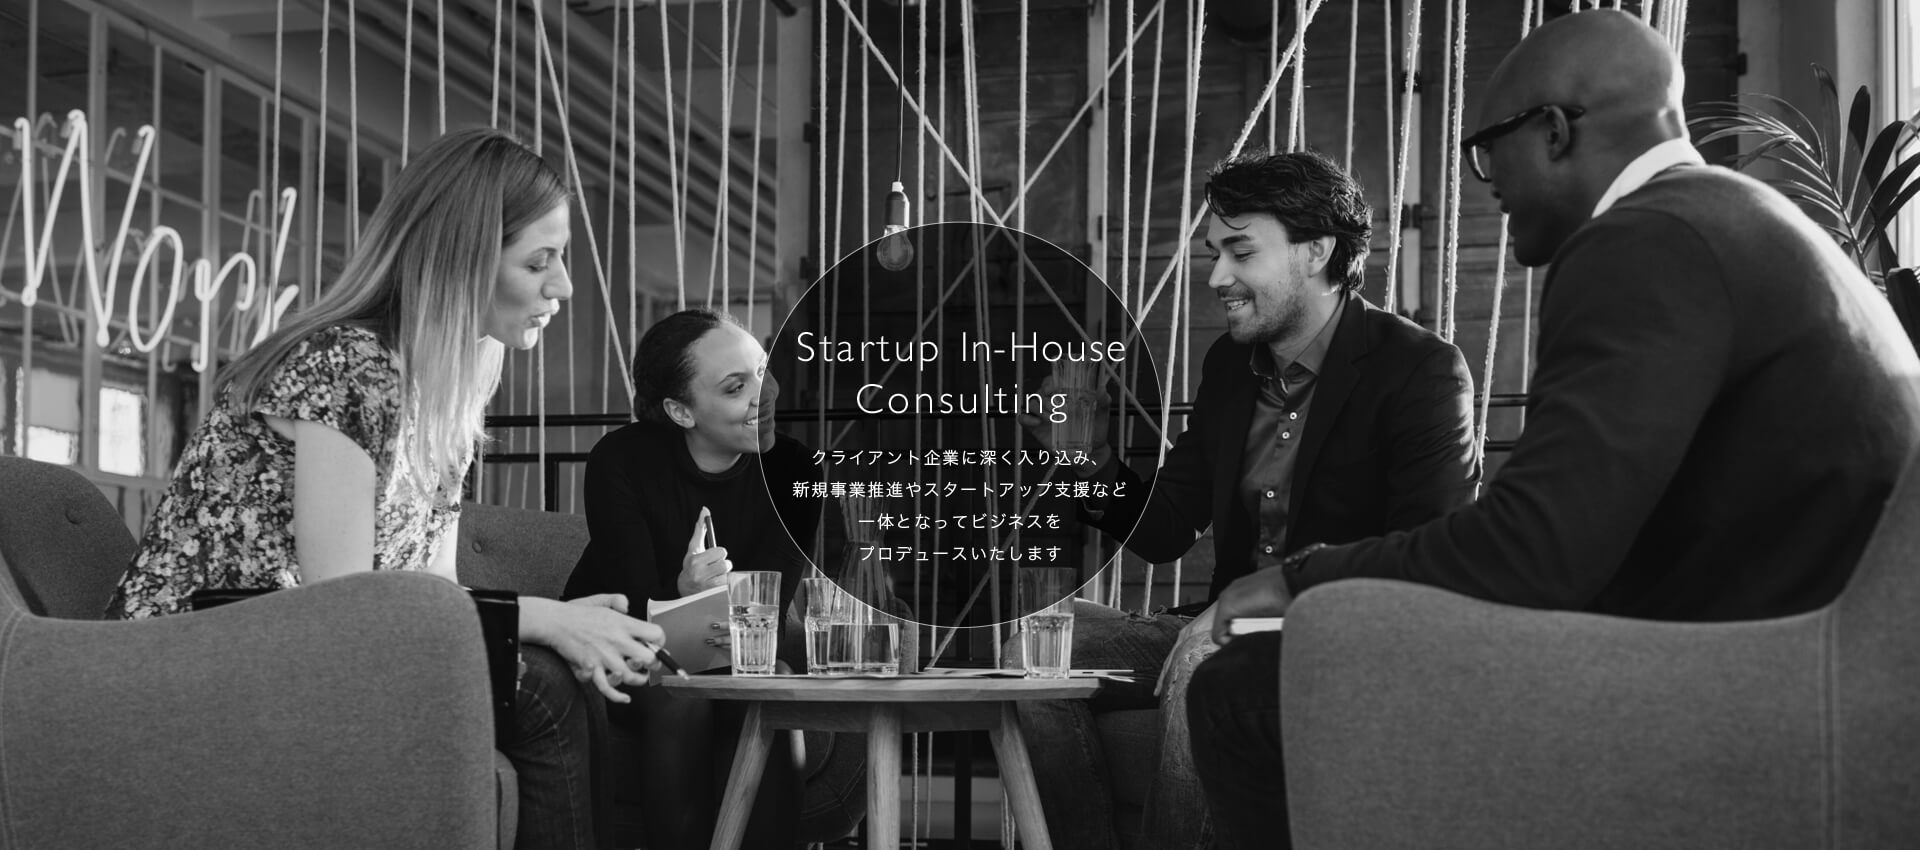 Startup In-House Consulting　クライアント企業に深く入り込み、新規事業推進やスタートアップ支援など一体となってビジネスをプロデュースいたします